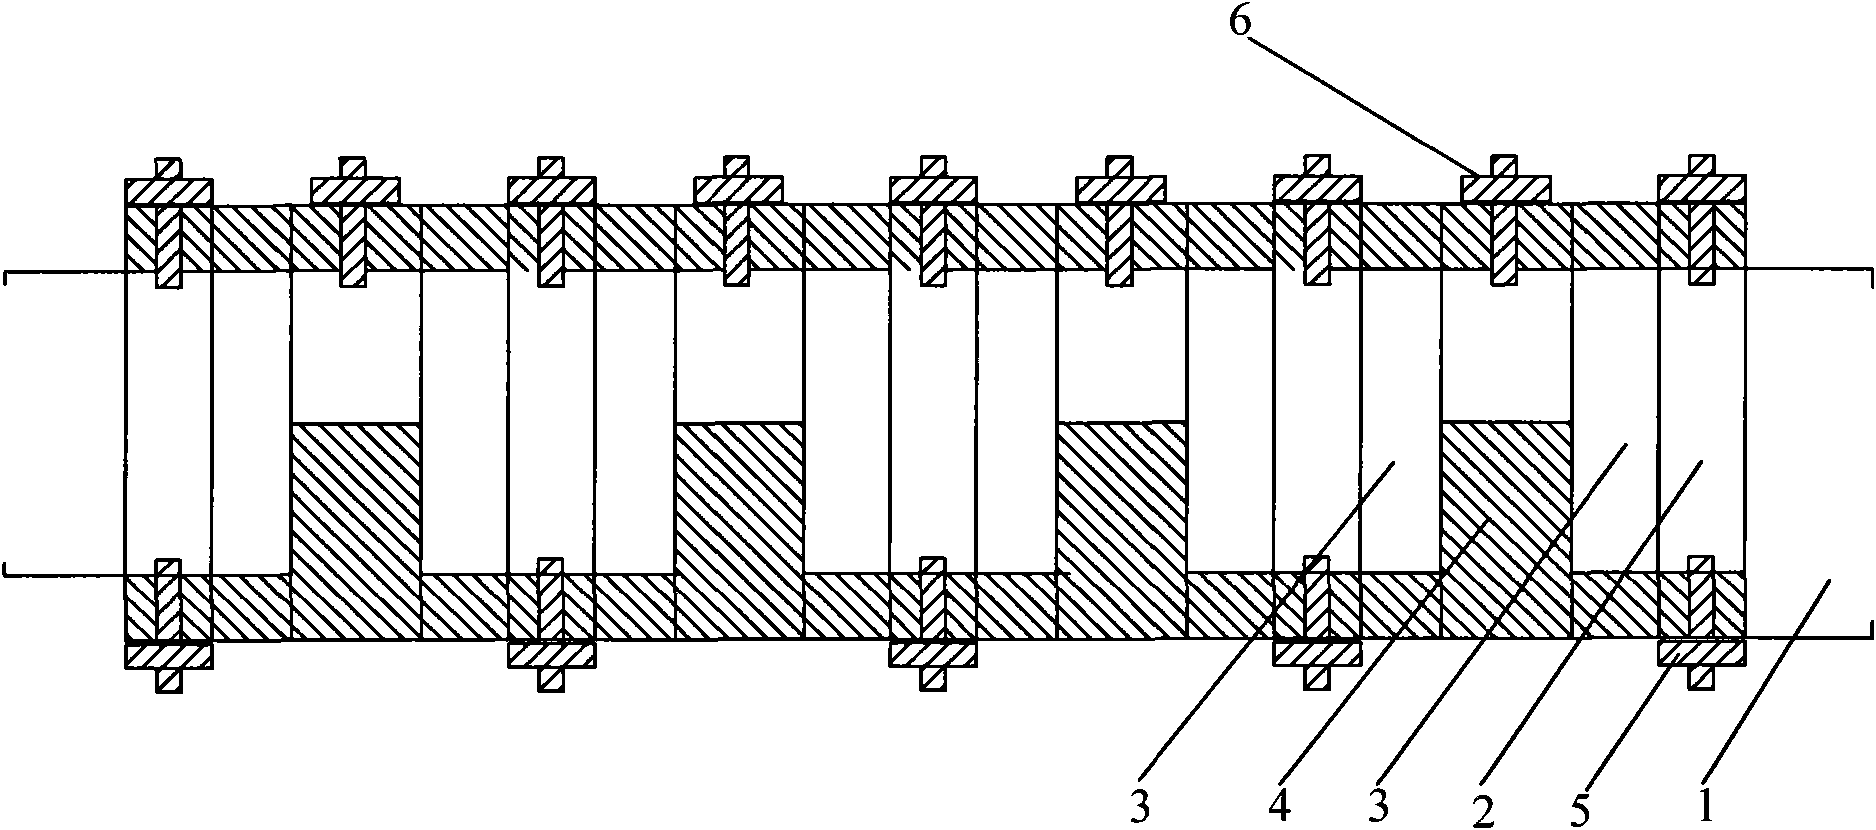 Modular wave filter